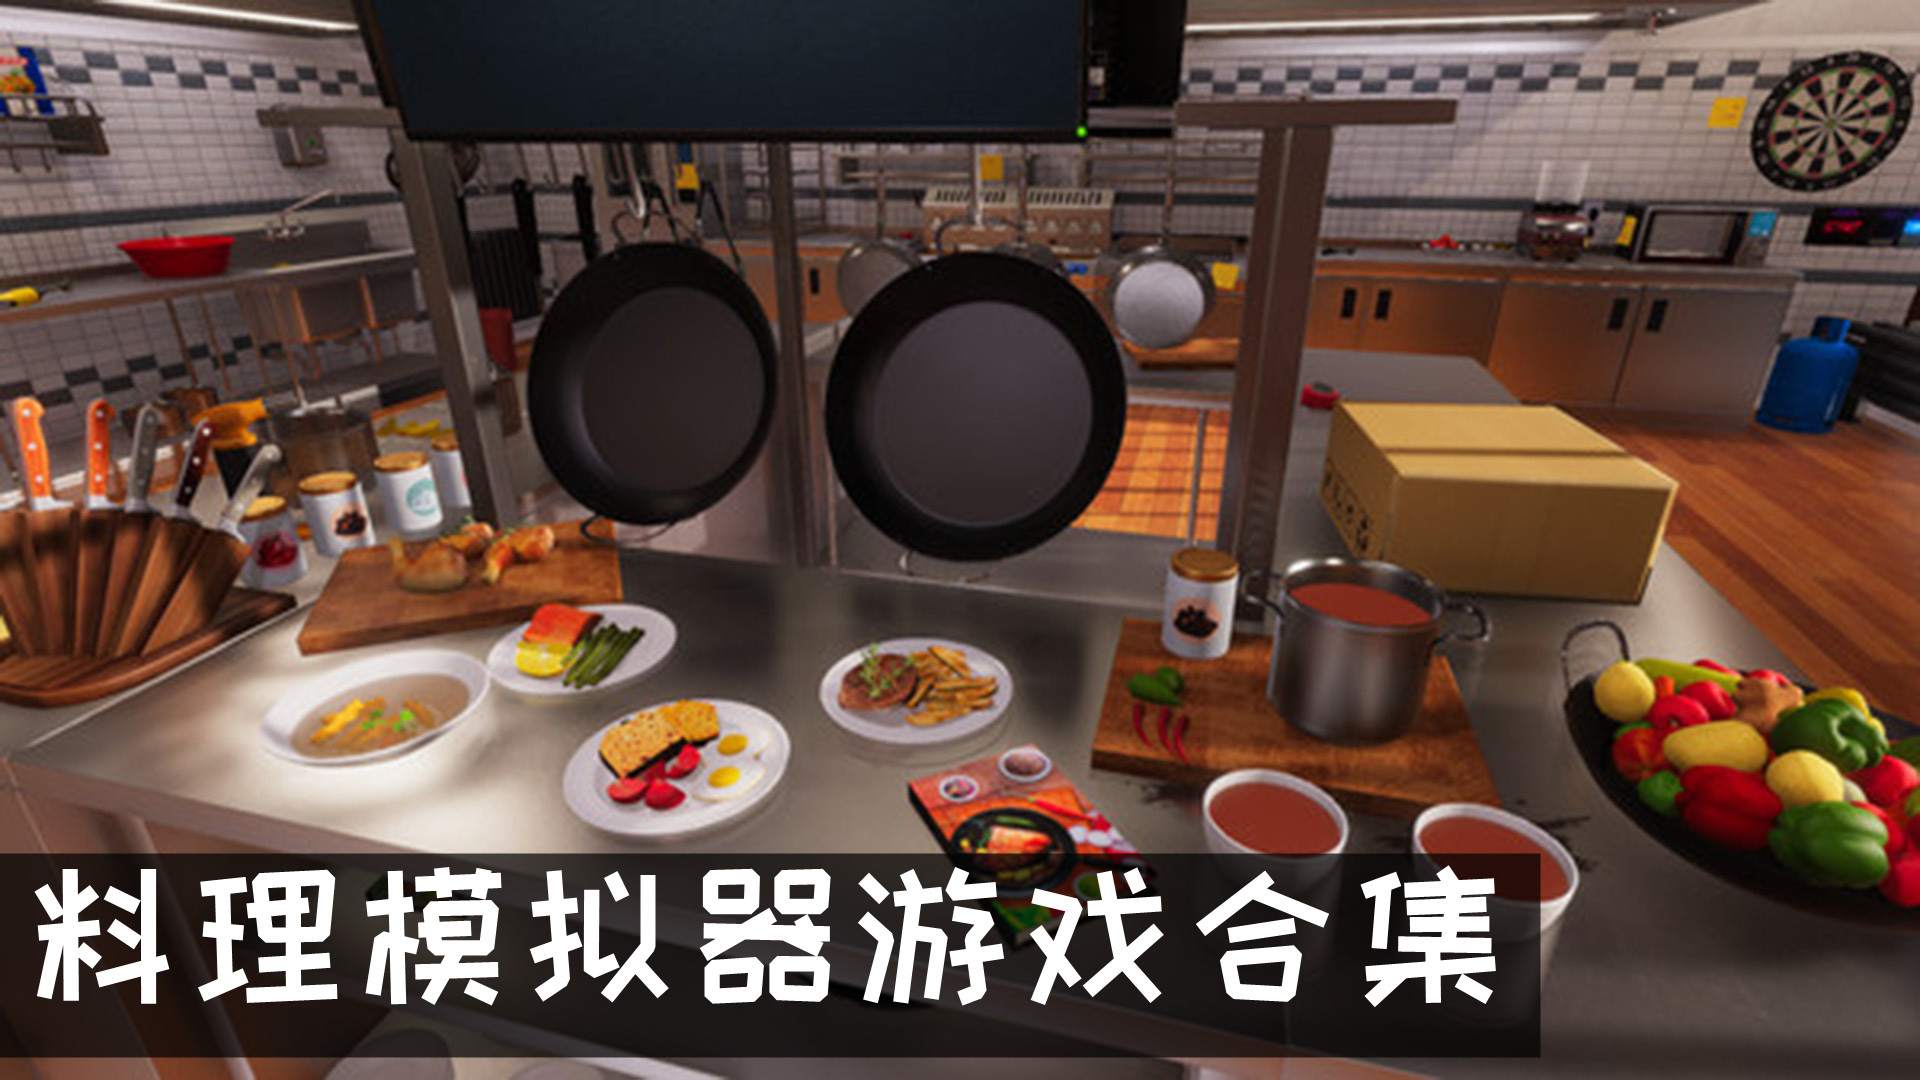 厨房料理模拟器游戏 料理模拟器游戏